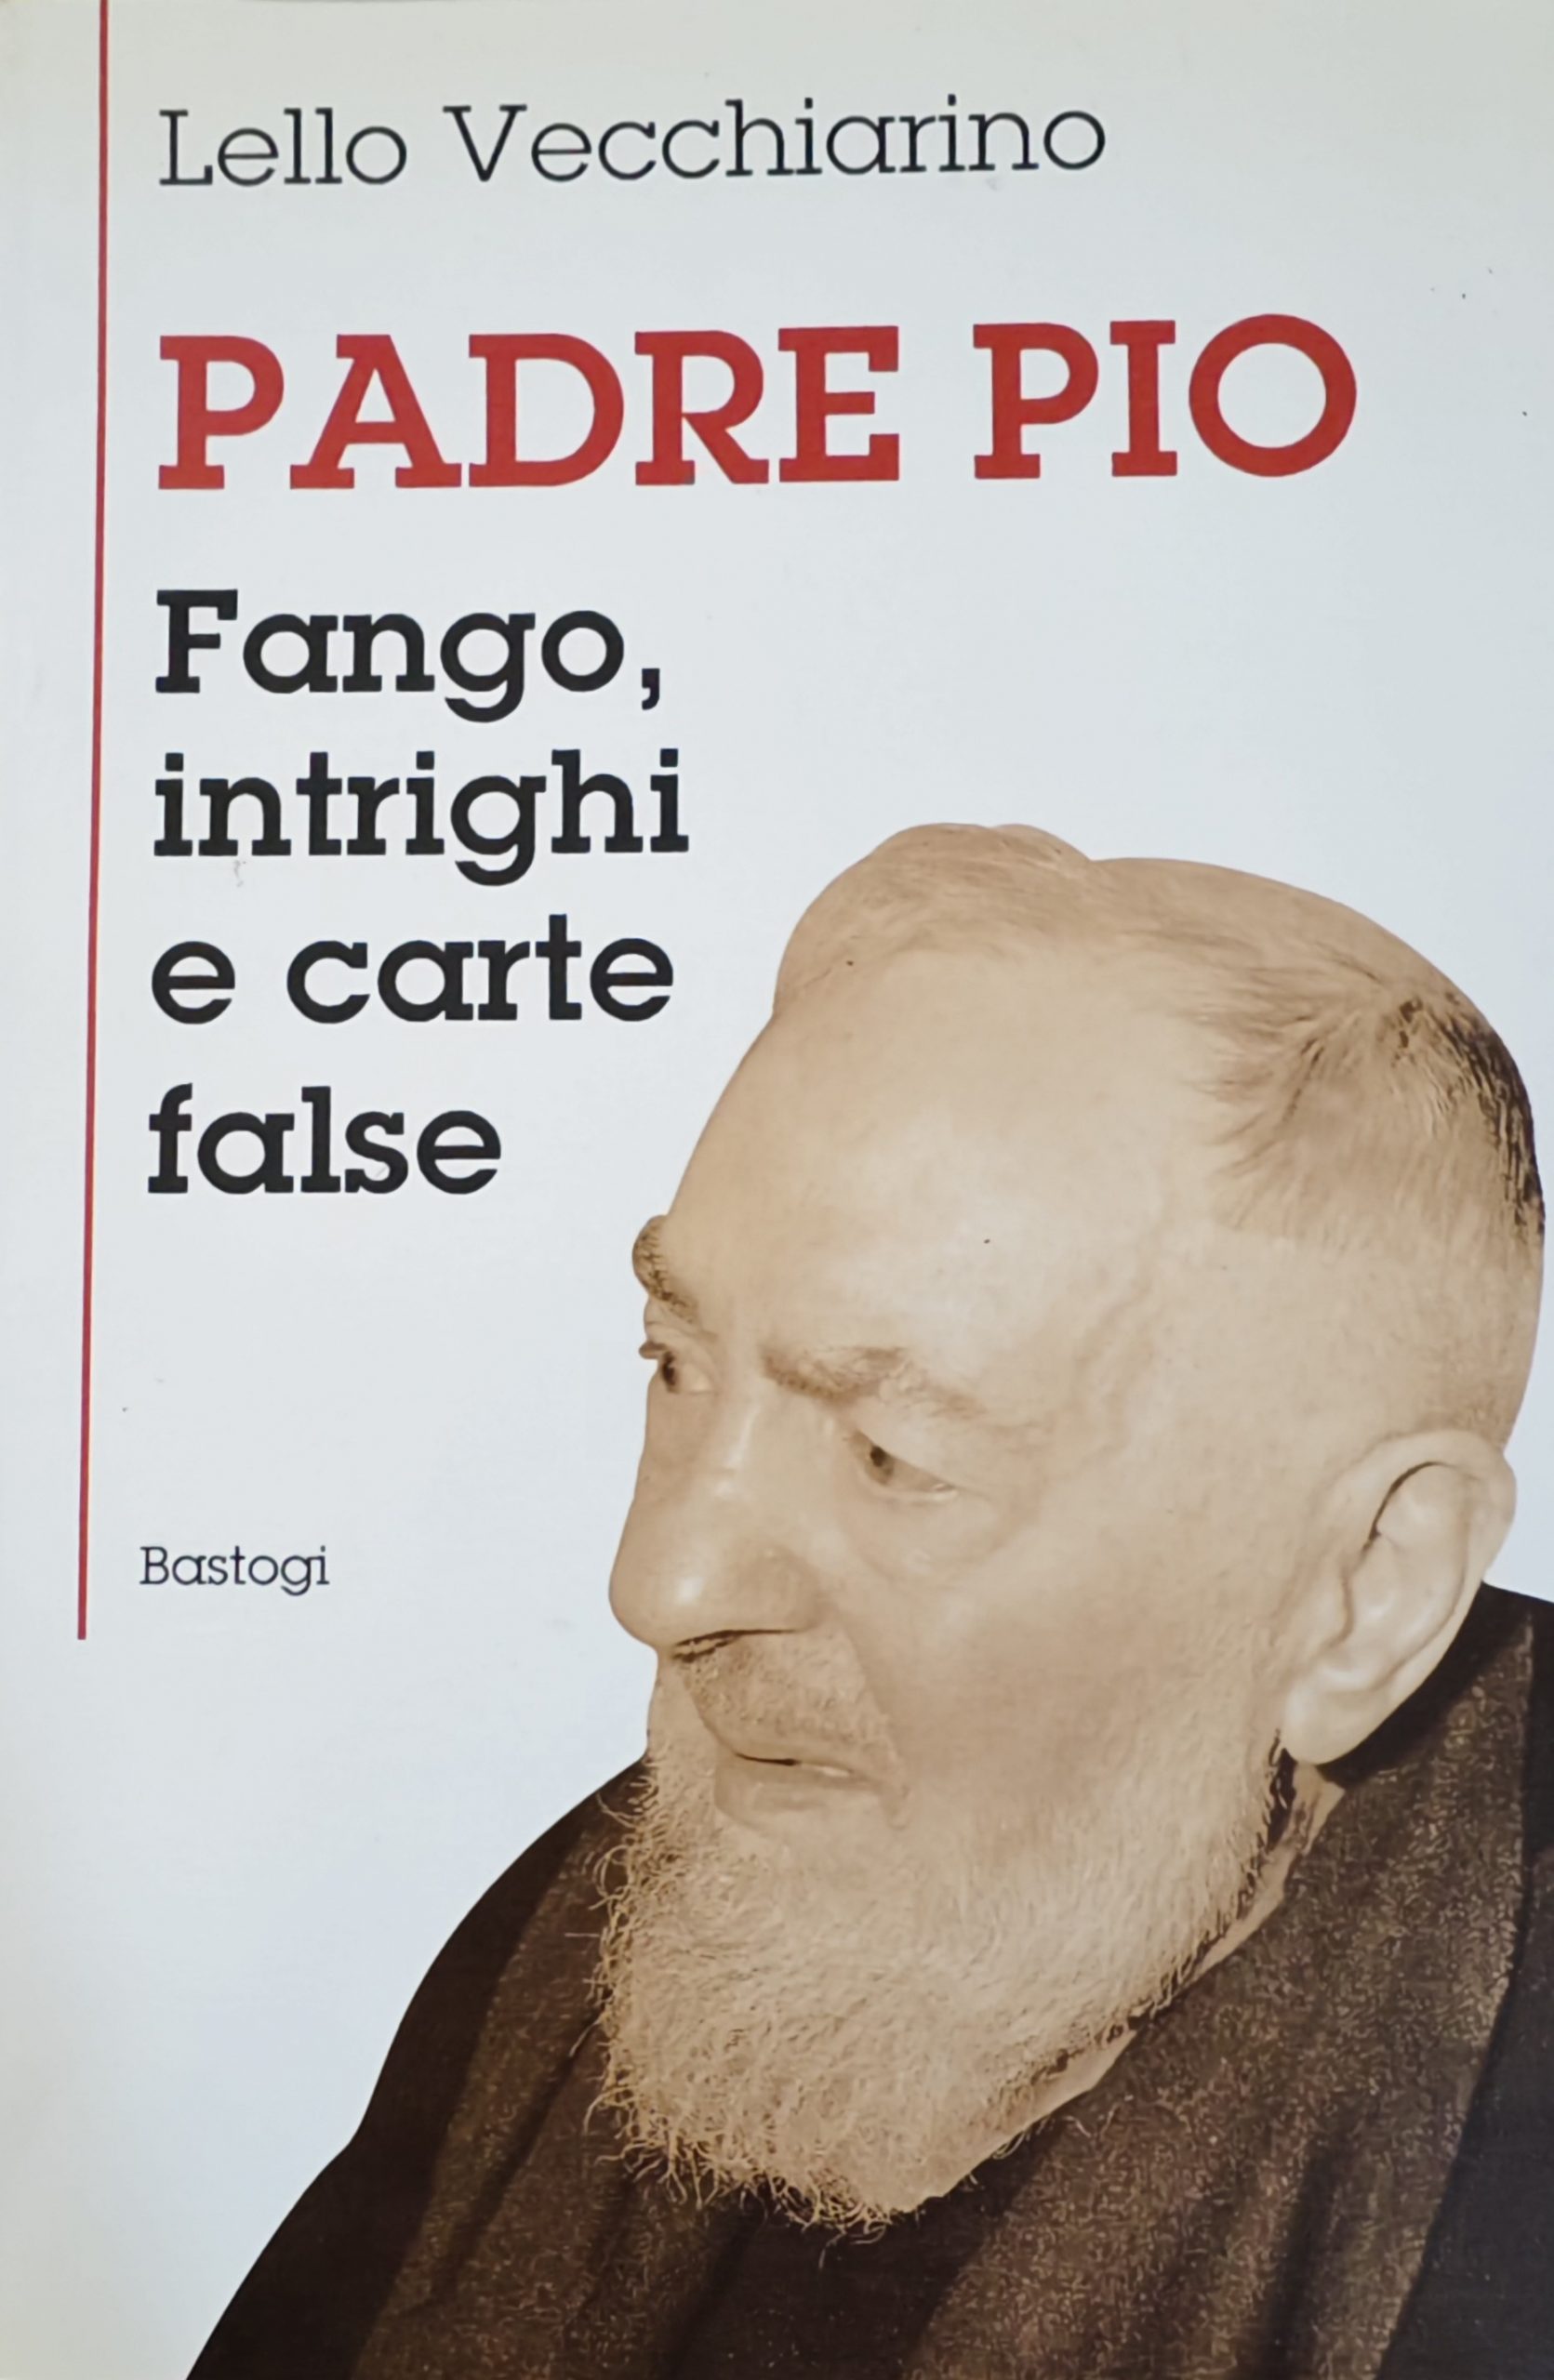 Un libro da riscoprire: “Padre Pio: fango, intrighi e carte false” (1996) di Lello Vecchiarino